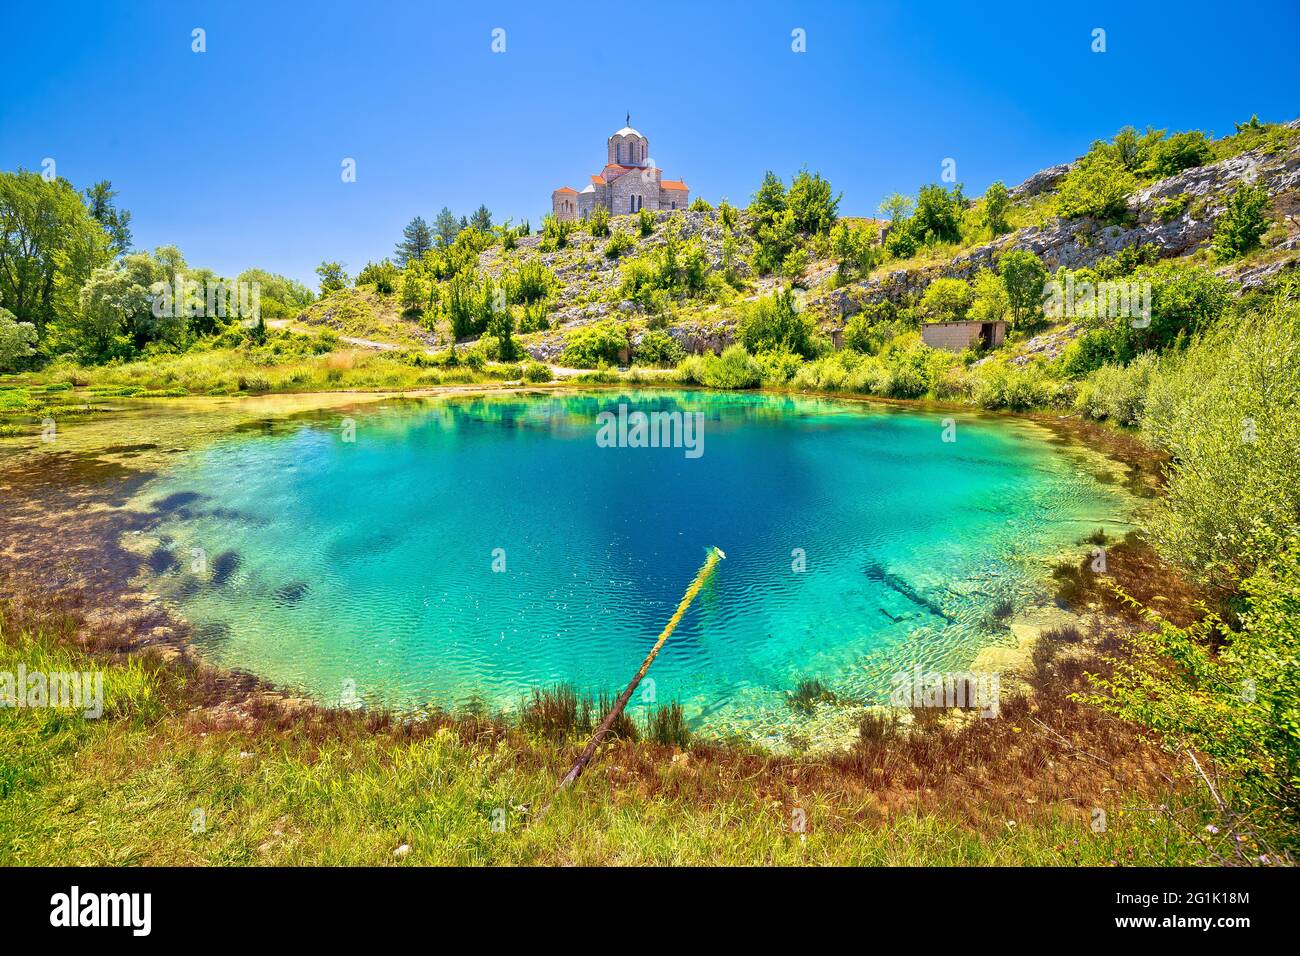 Cetina Quelle Wasserloch und orthodoxe Kirche auf dem Hügel Blick, dalmatinische Zagora Region von Kroatien Stockfoto